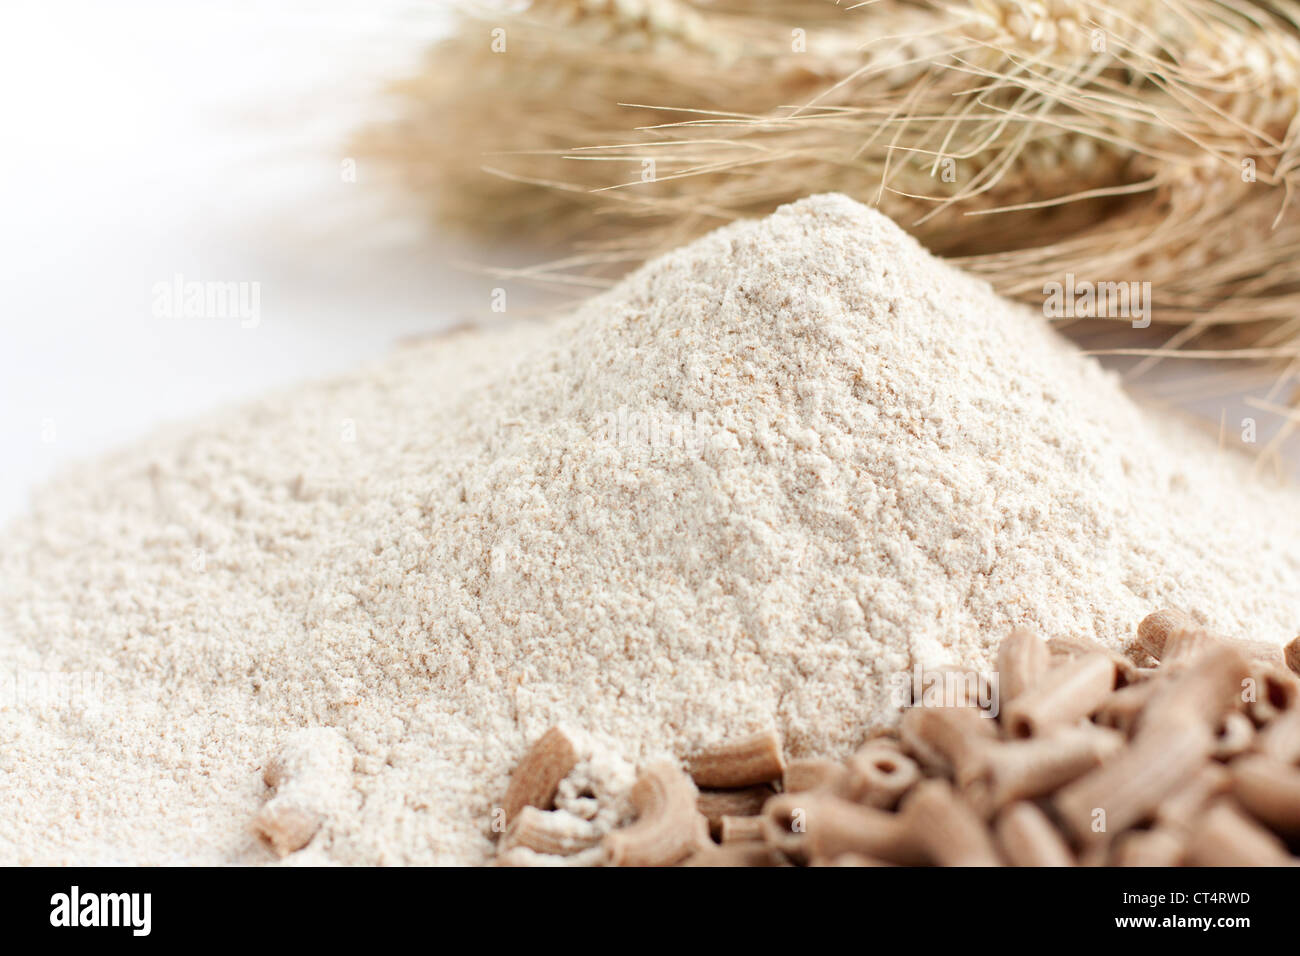 Le son de la farine avec un close-up et les épis de blé Banque D'Images